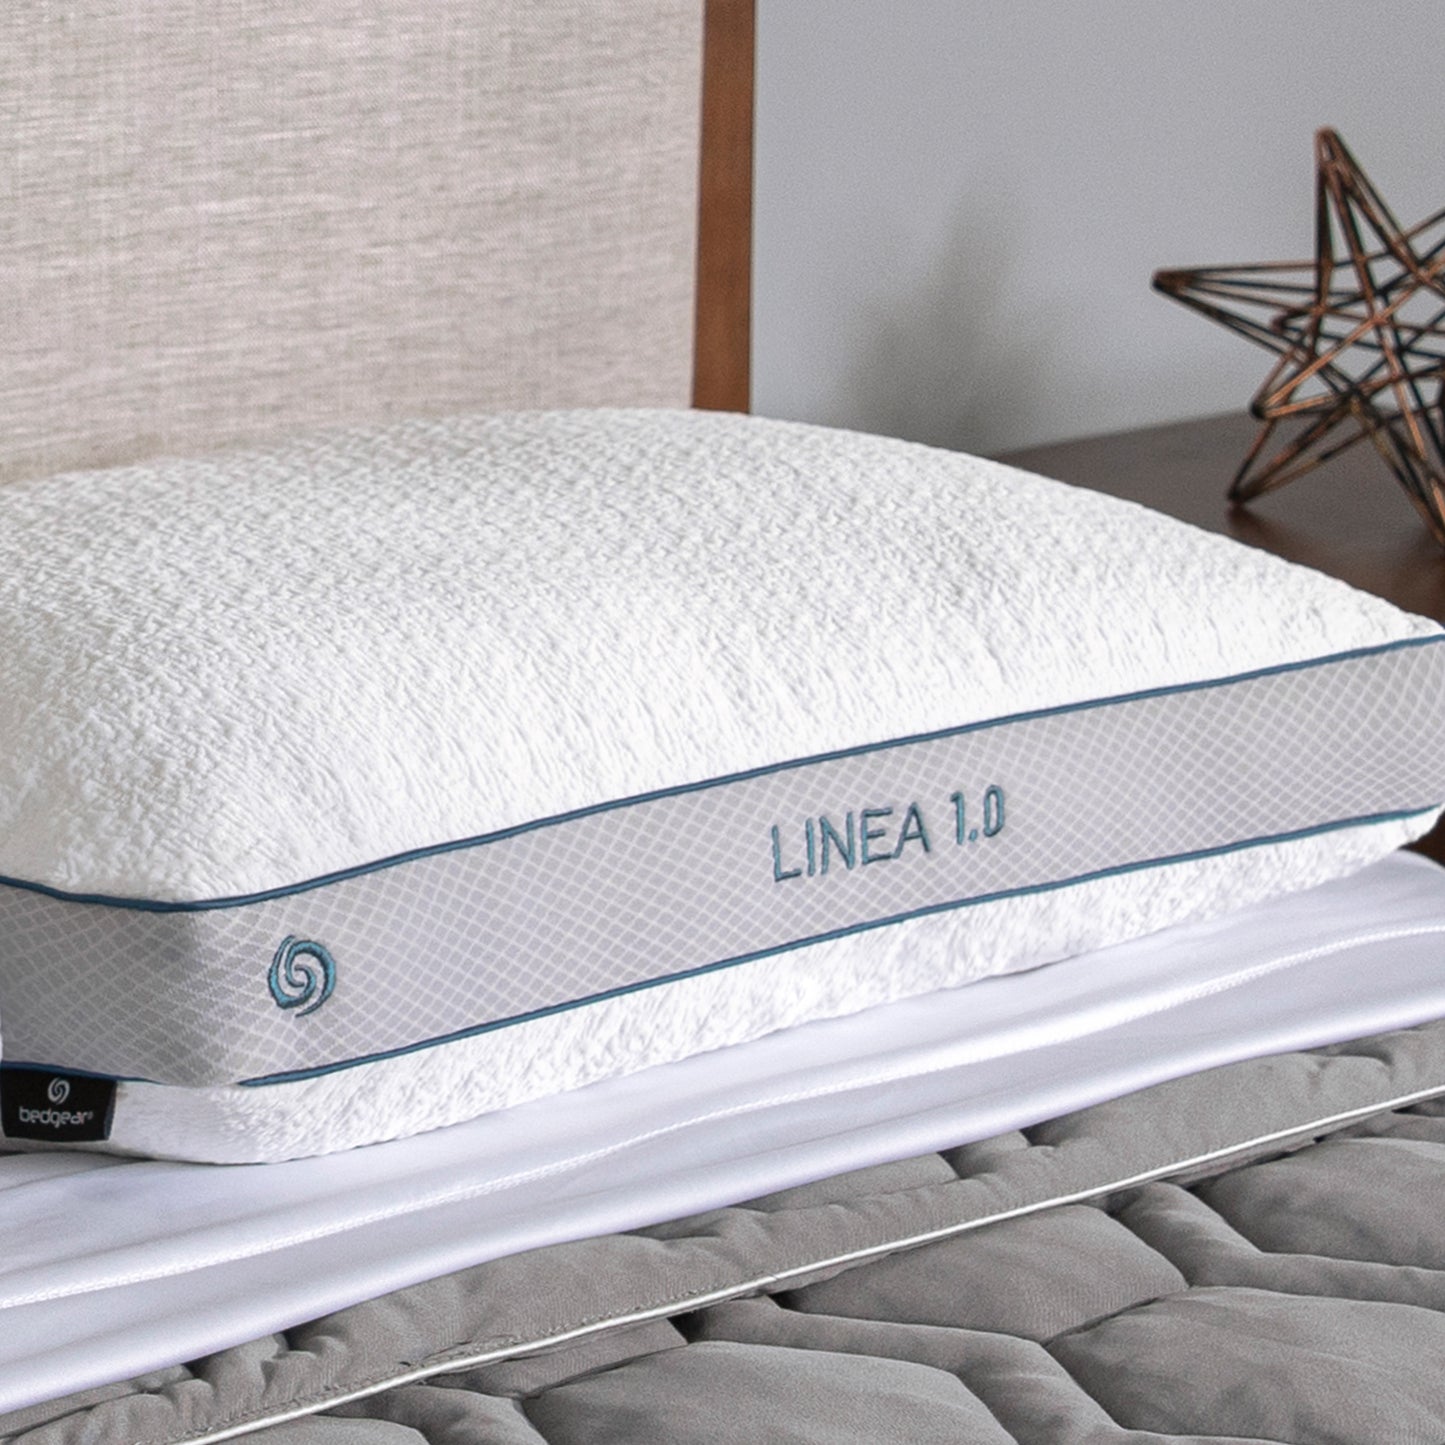 Bedgear Linea 1.0 Stomach Sleeper Pillow